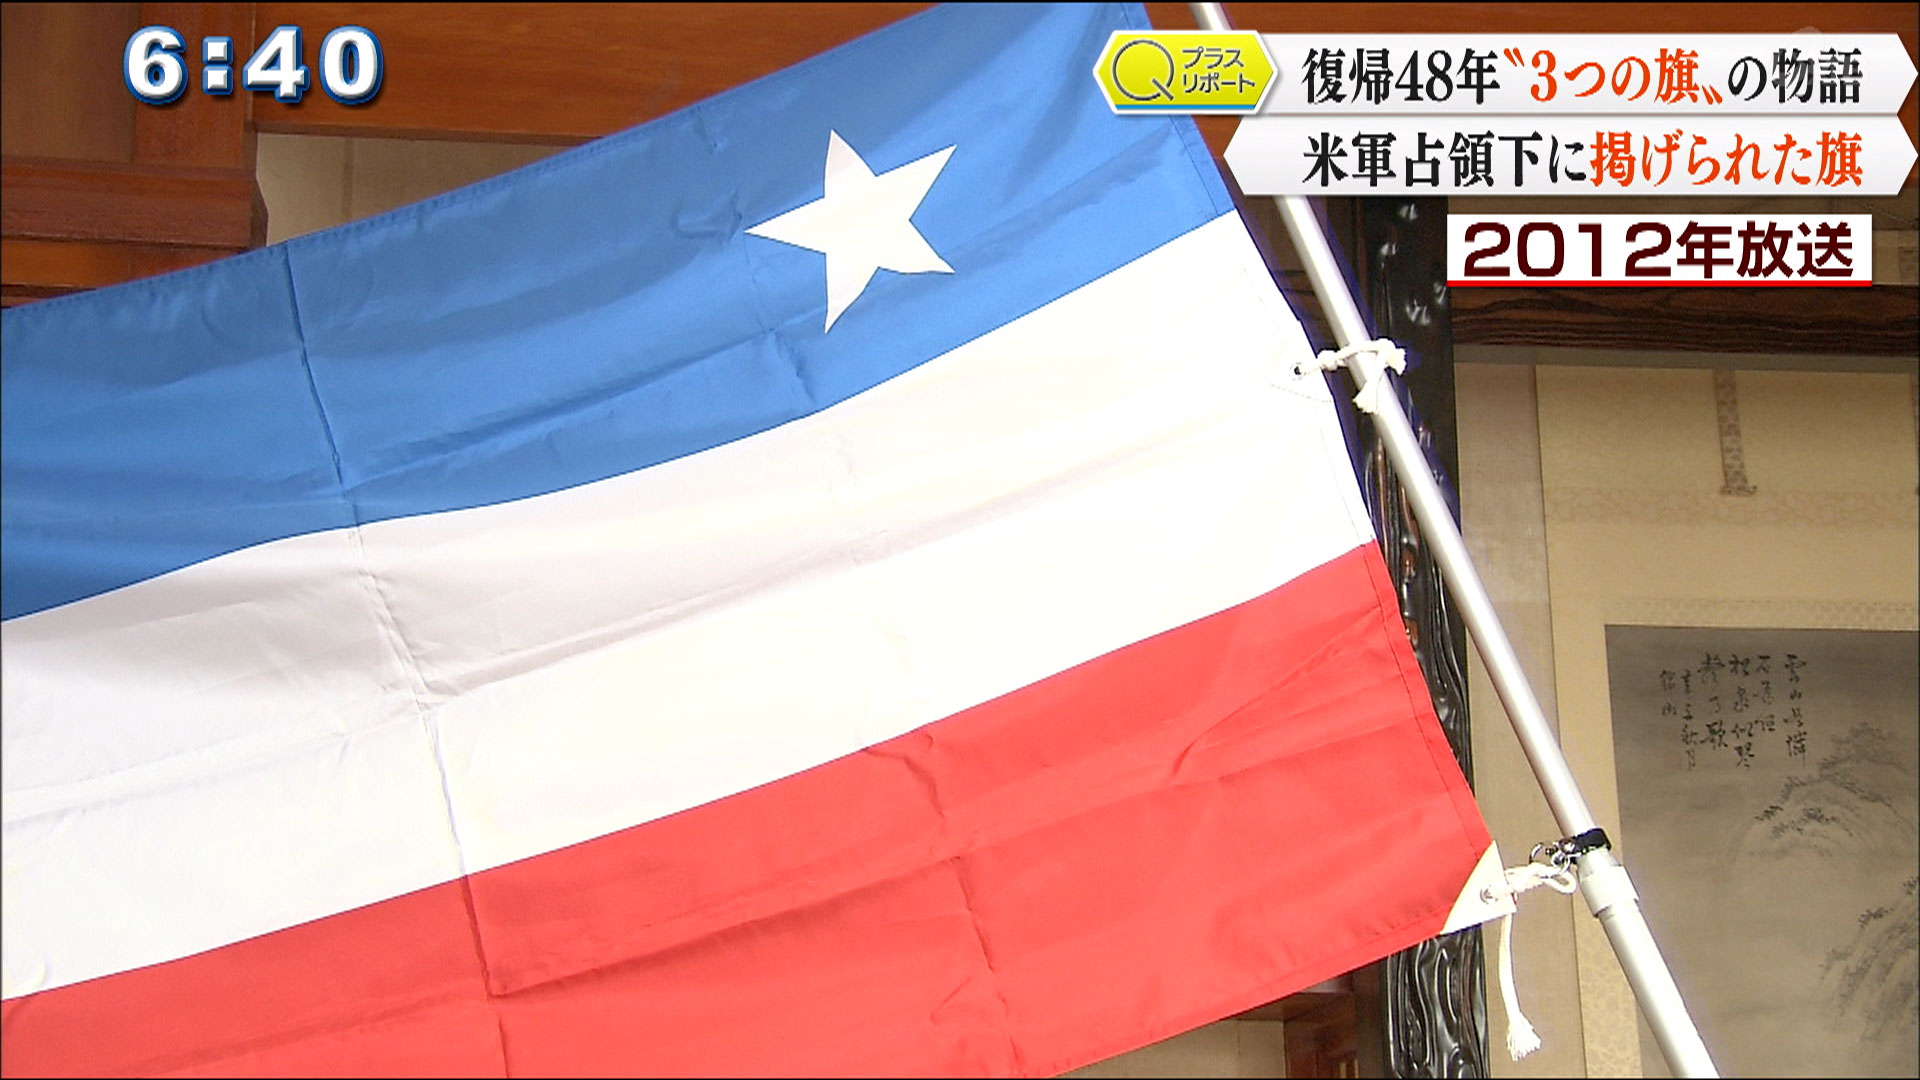 Qプラスリポート 復帰48年 沖縄 3つの旗 をめぐる思い Qab News Headline